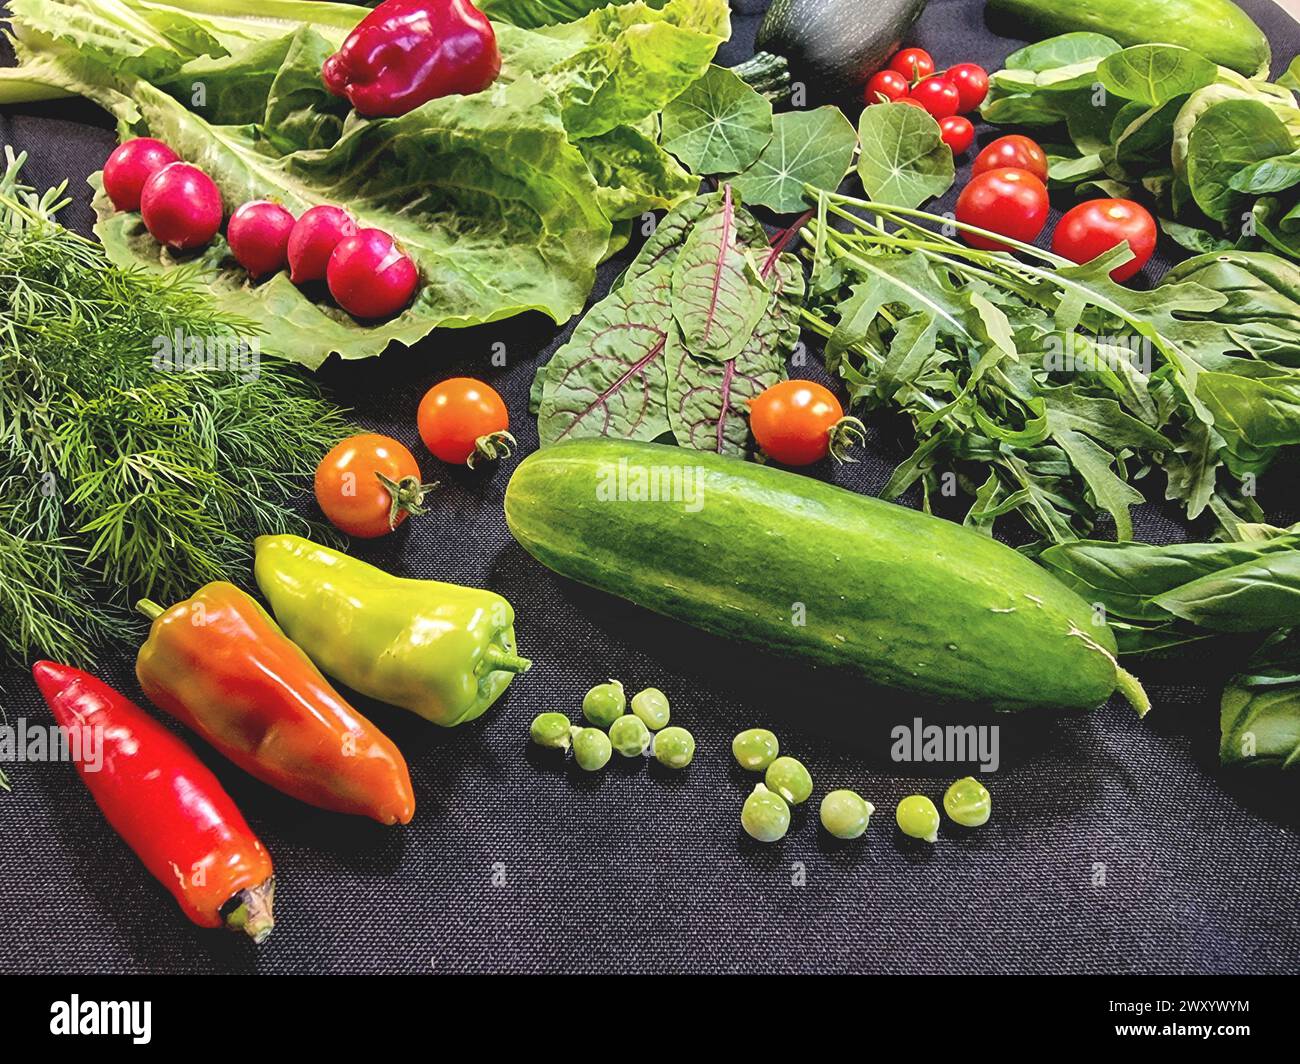 Légumes récoltés dans le jardin : poivrons, concombre, pois, laitue, radis, tomate, salade de roquette, mangold Banque D'Images